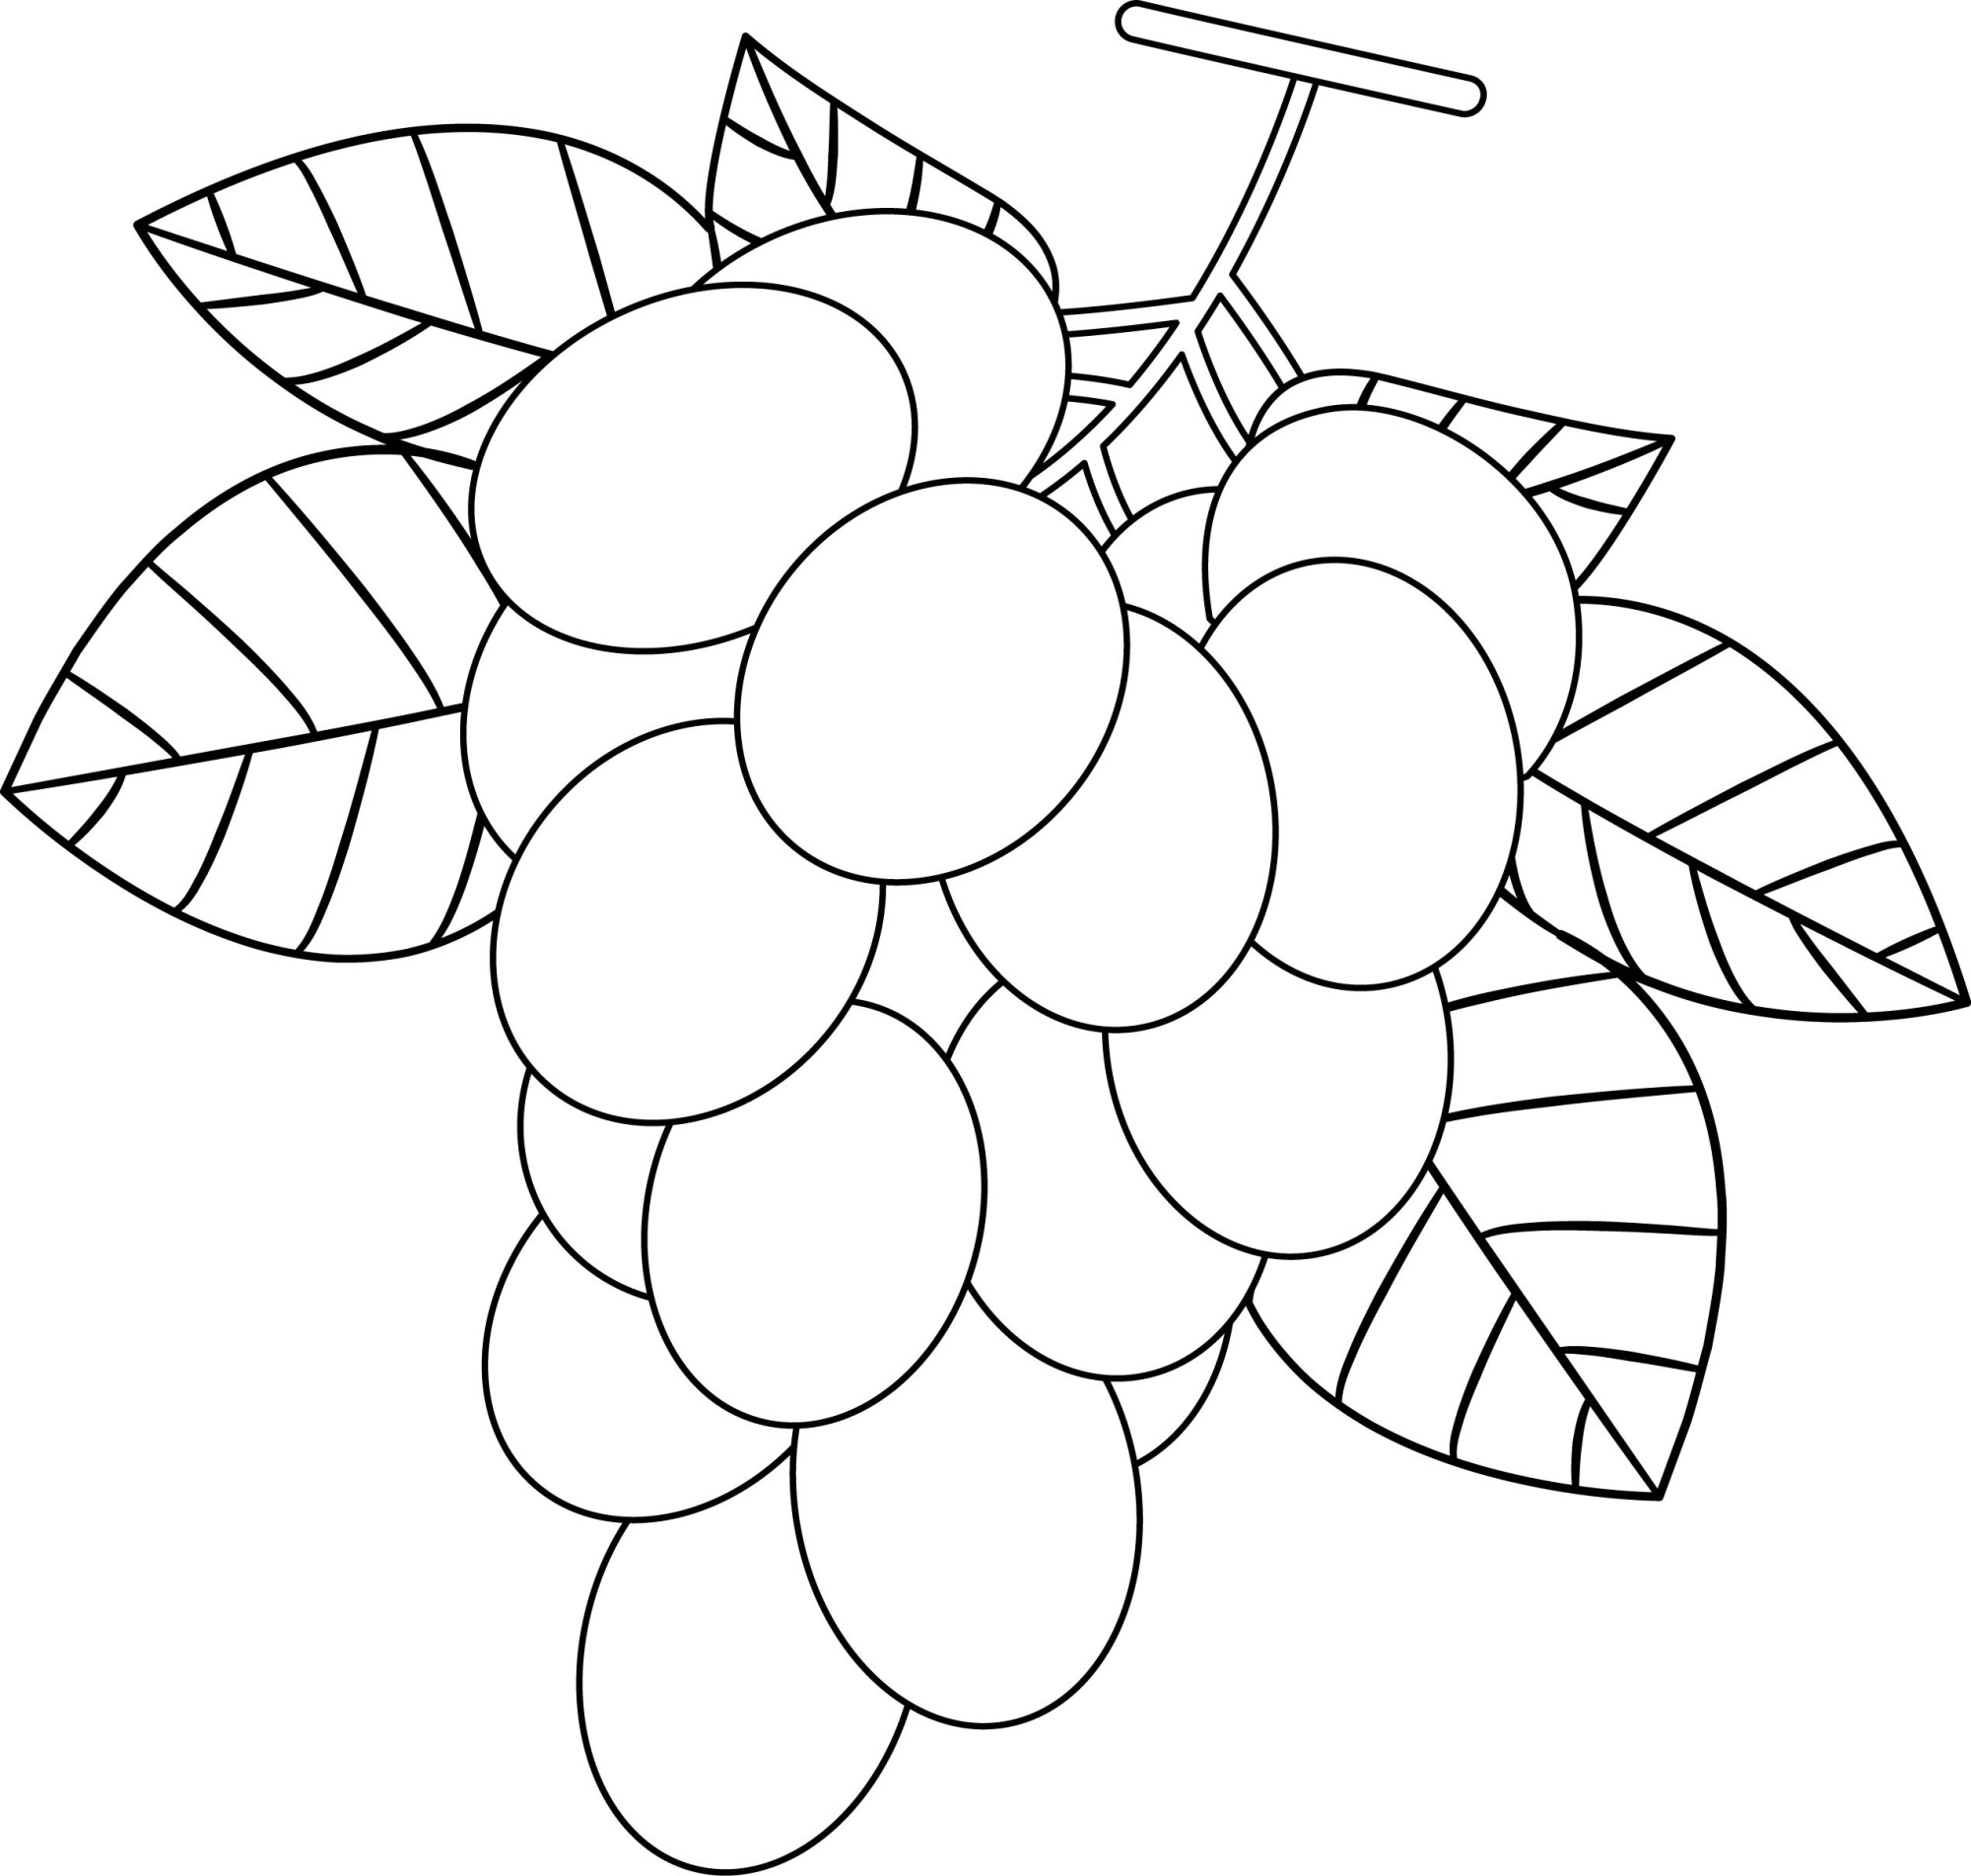 Раскраска для детей: ветка винограда с крупными ягодами